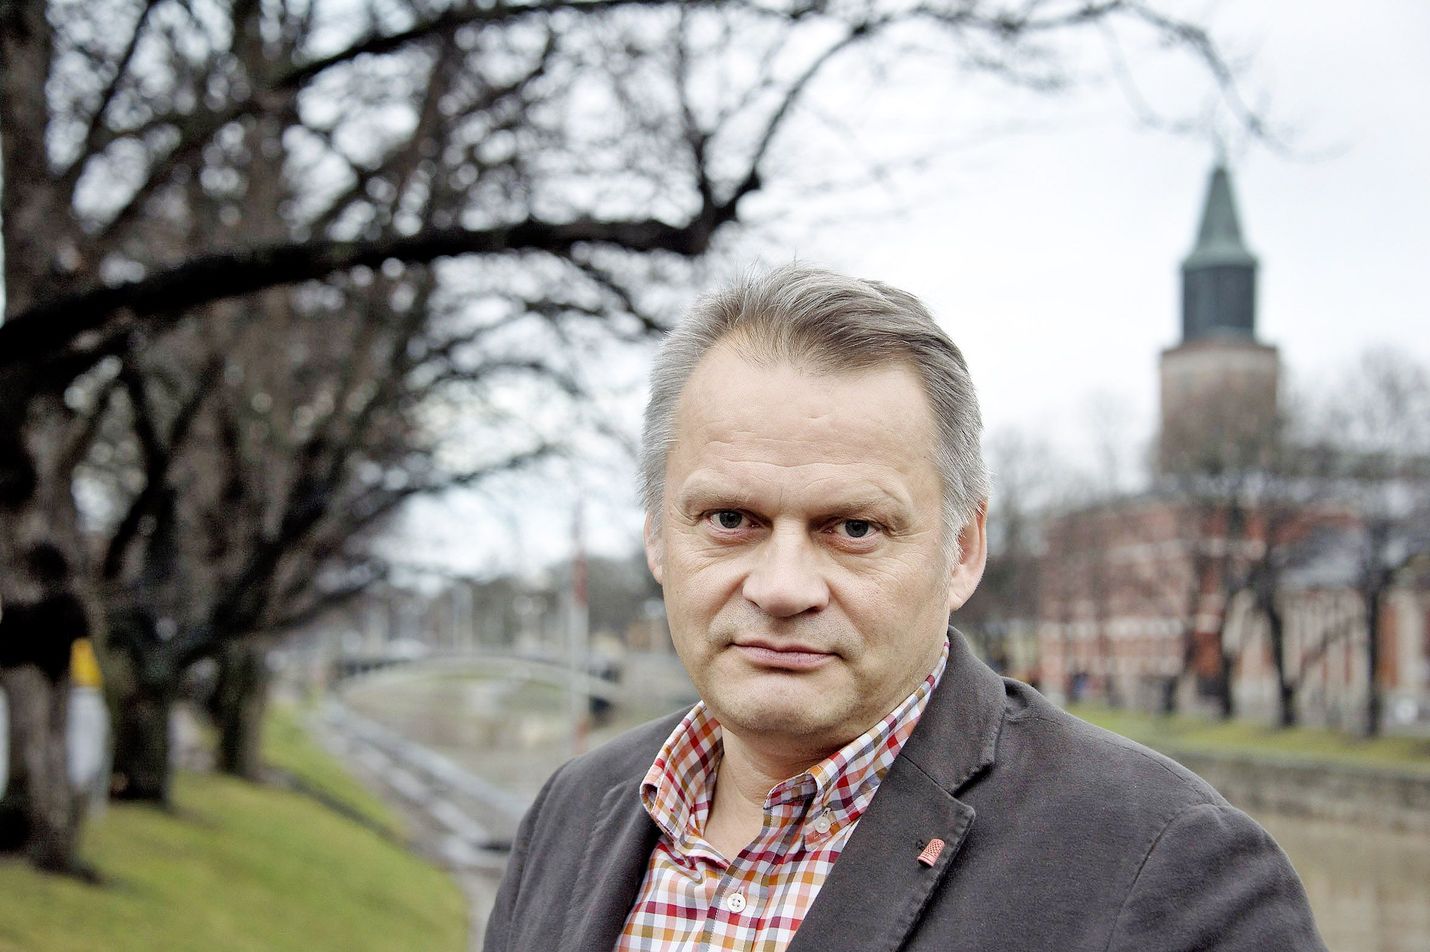 Tulevaisuuden tutkimuksen professori Markku Wilenius yllättyi hallintoneuvoston valinnasta, koska piti itseään ehdottomasti pätevimpänä tehtävään.